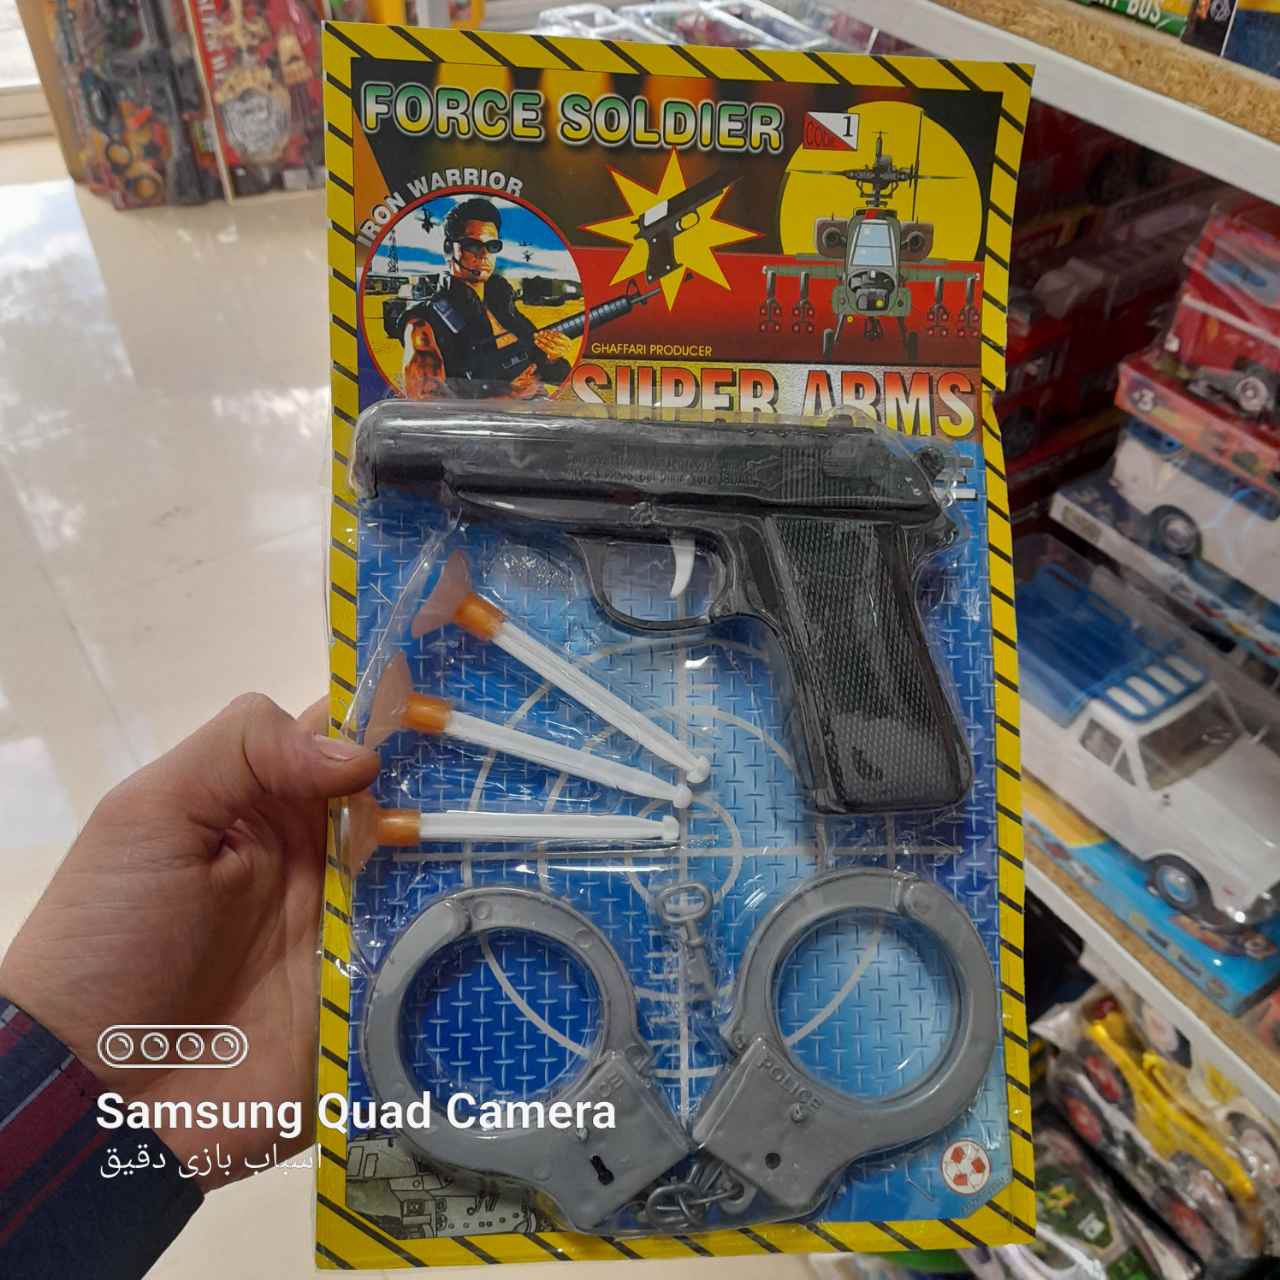   خرید اسباب بازی پلیس شجاع به قیمت مناسب